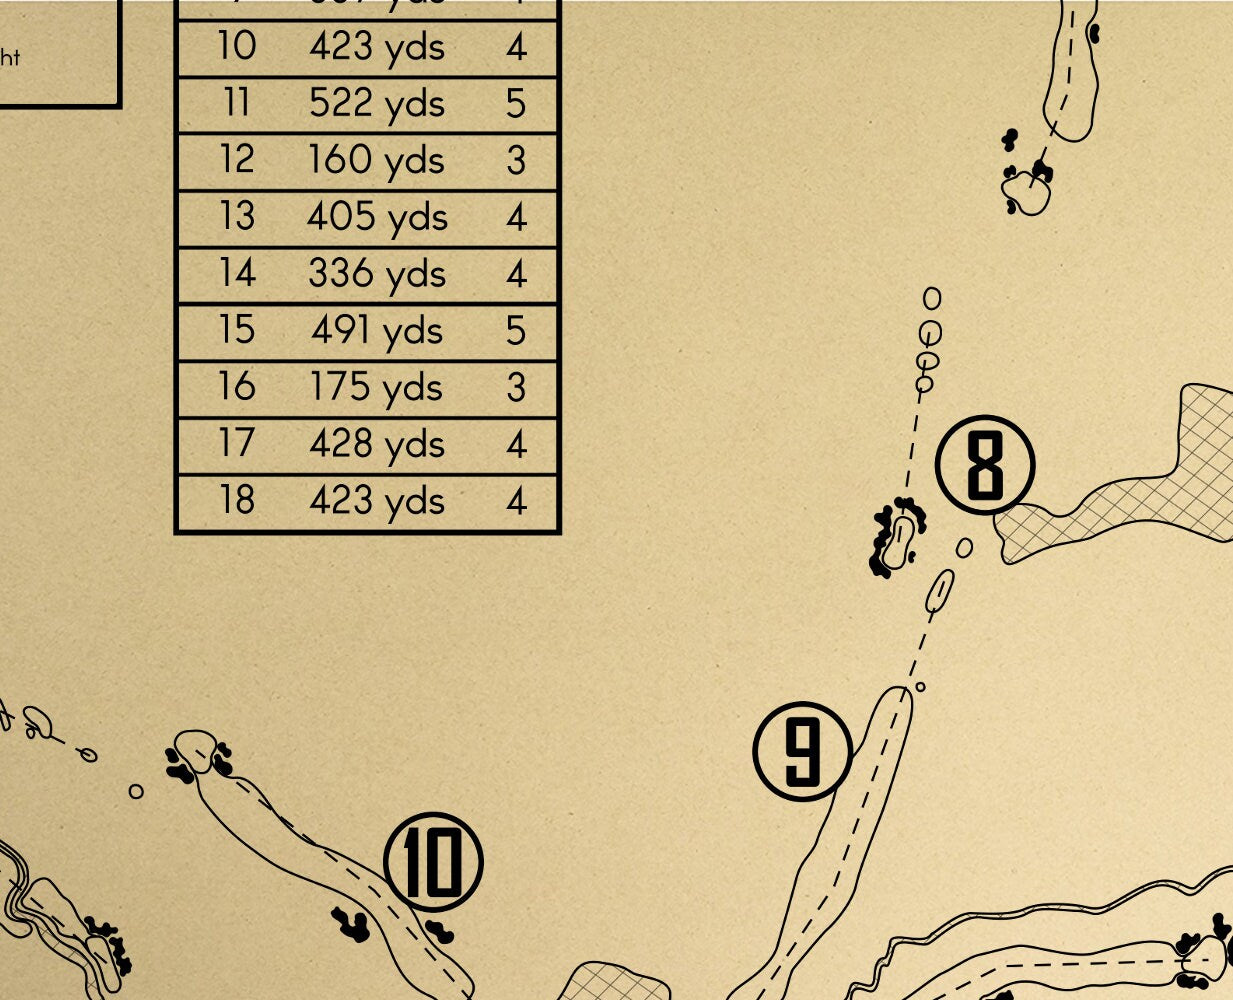 Muirfield Village Golf Club Outline (Print)